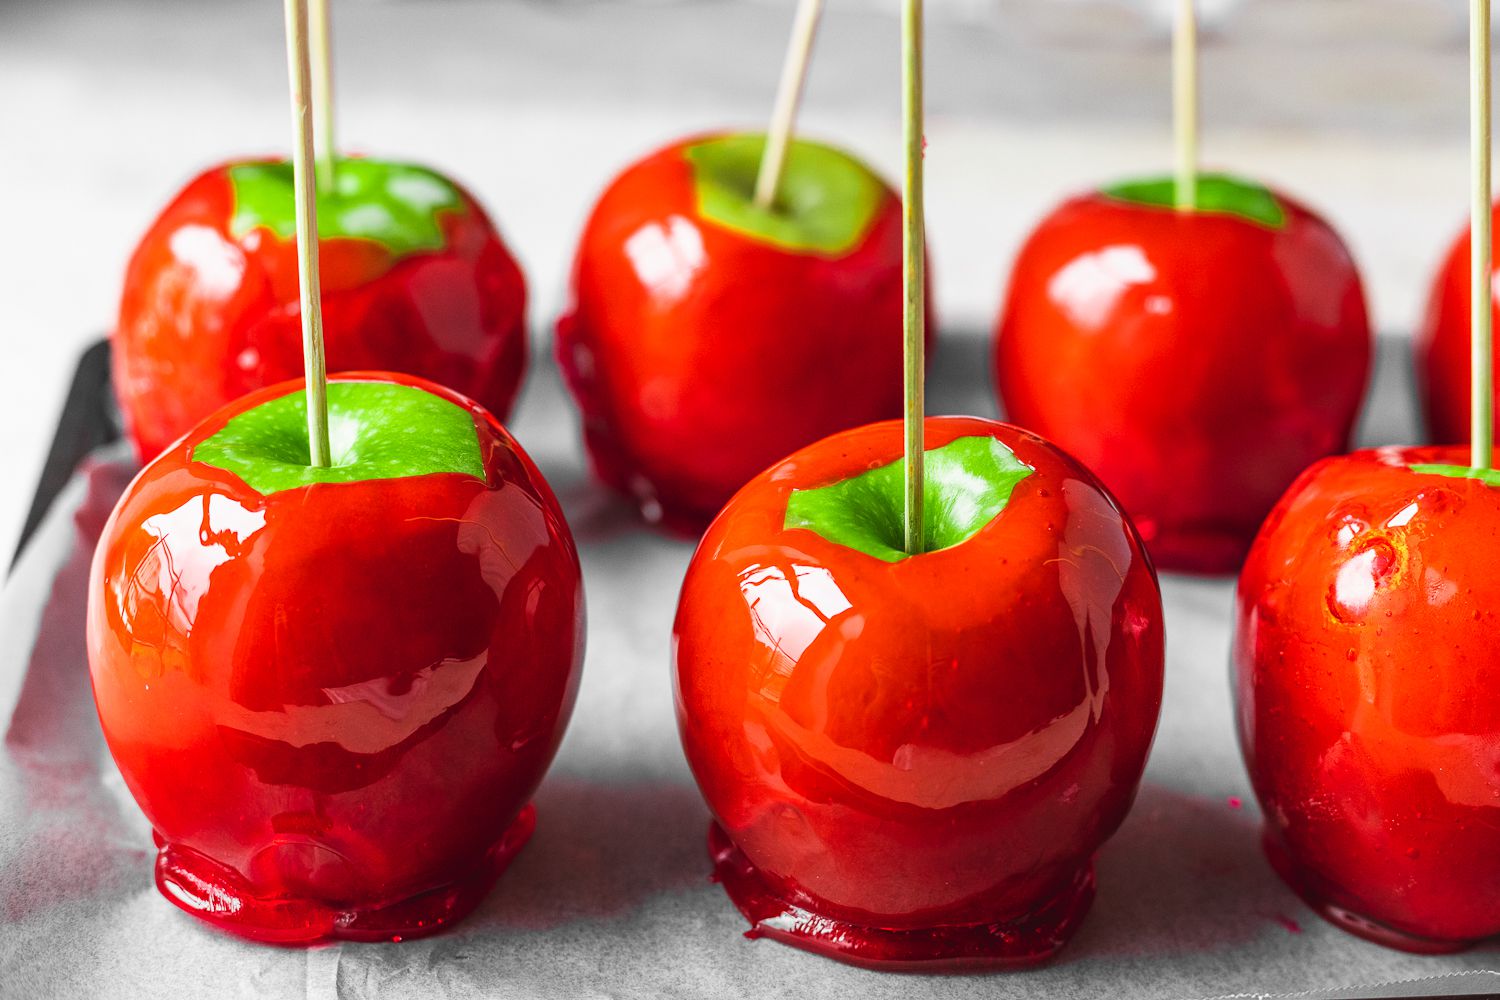 Candy apples – món ăn quan trọng trong ngày lễ của người dân Đức